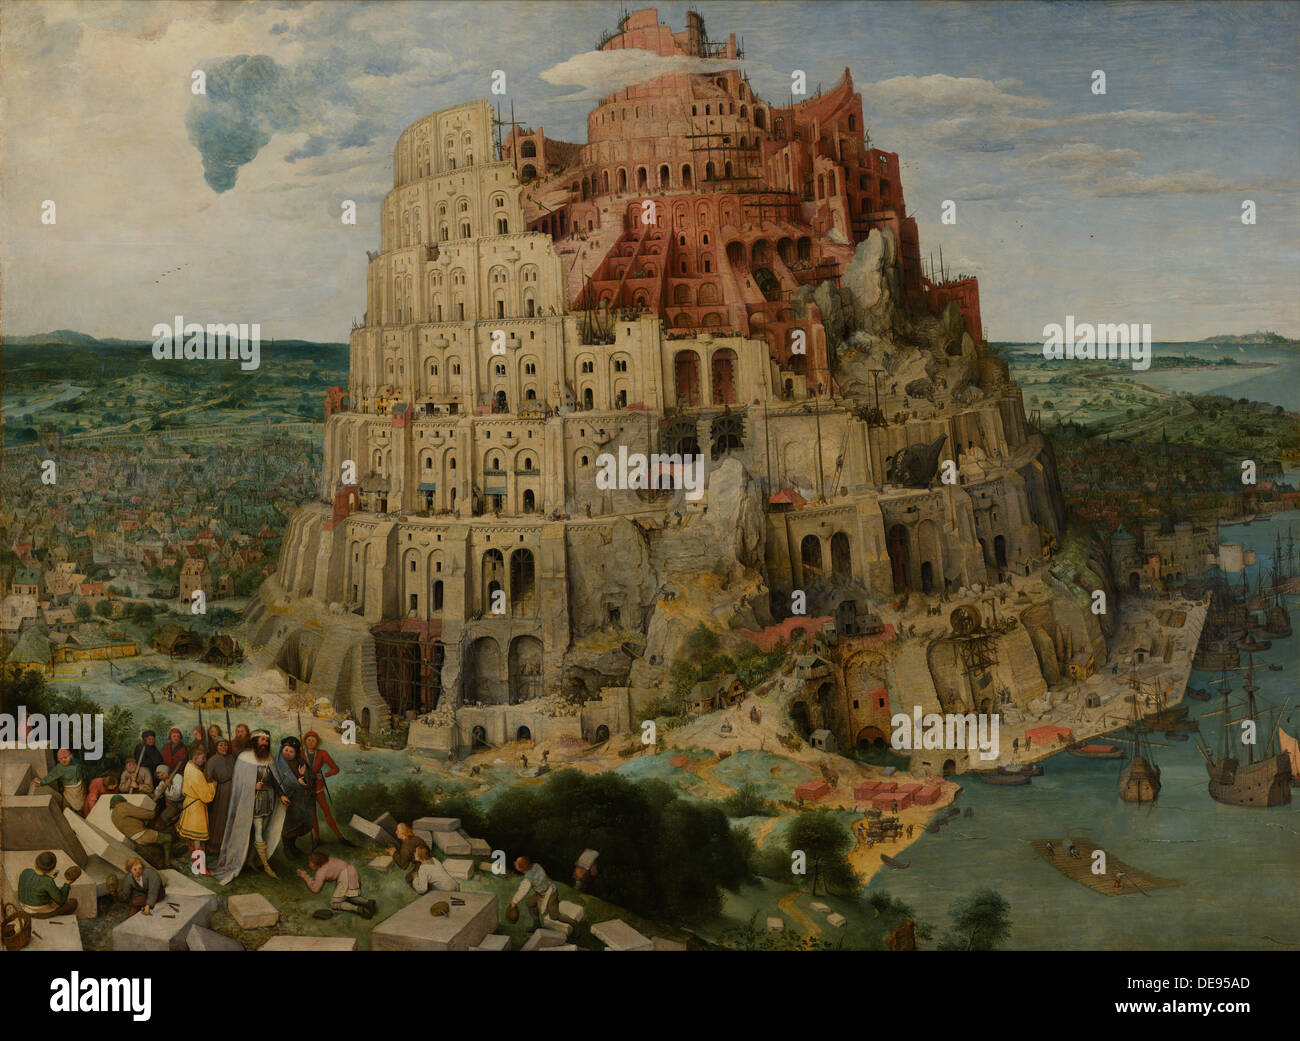 Der Turm zu Babel, 1563. Künstler: Bruegel (Brueghel), Pieter, der ältere (ca. 1525-1569) Stockfoto